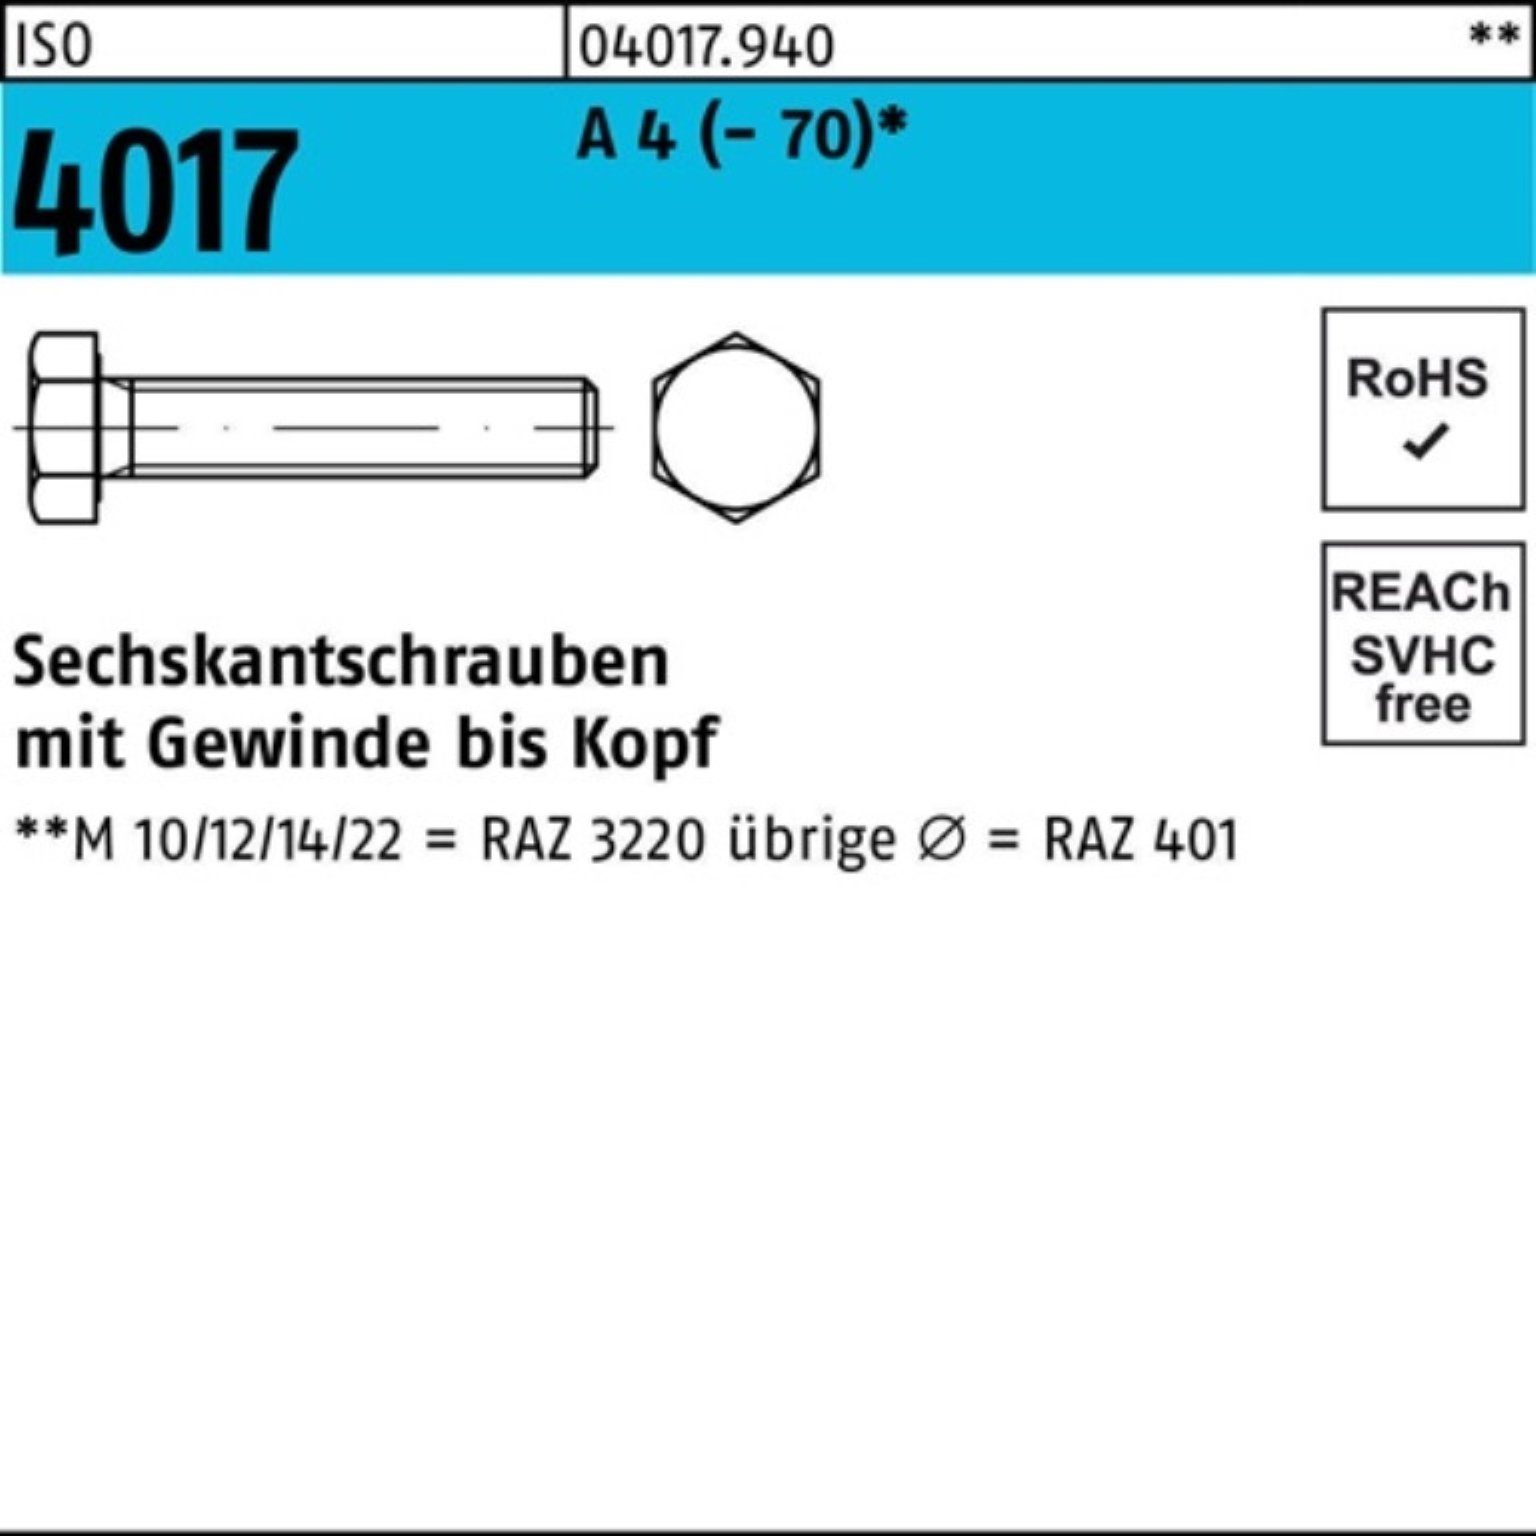 Bufab Sechskantschraube VG Pack 50 4017 55 ISO 100er (70) 4 Stück Sechskantschraube A M14x